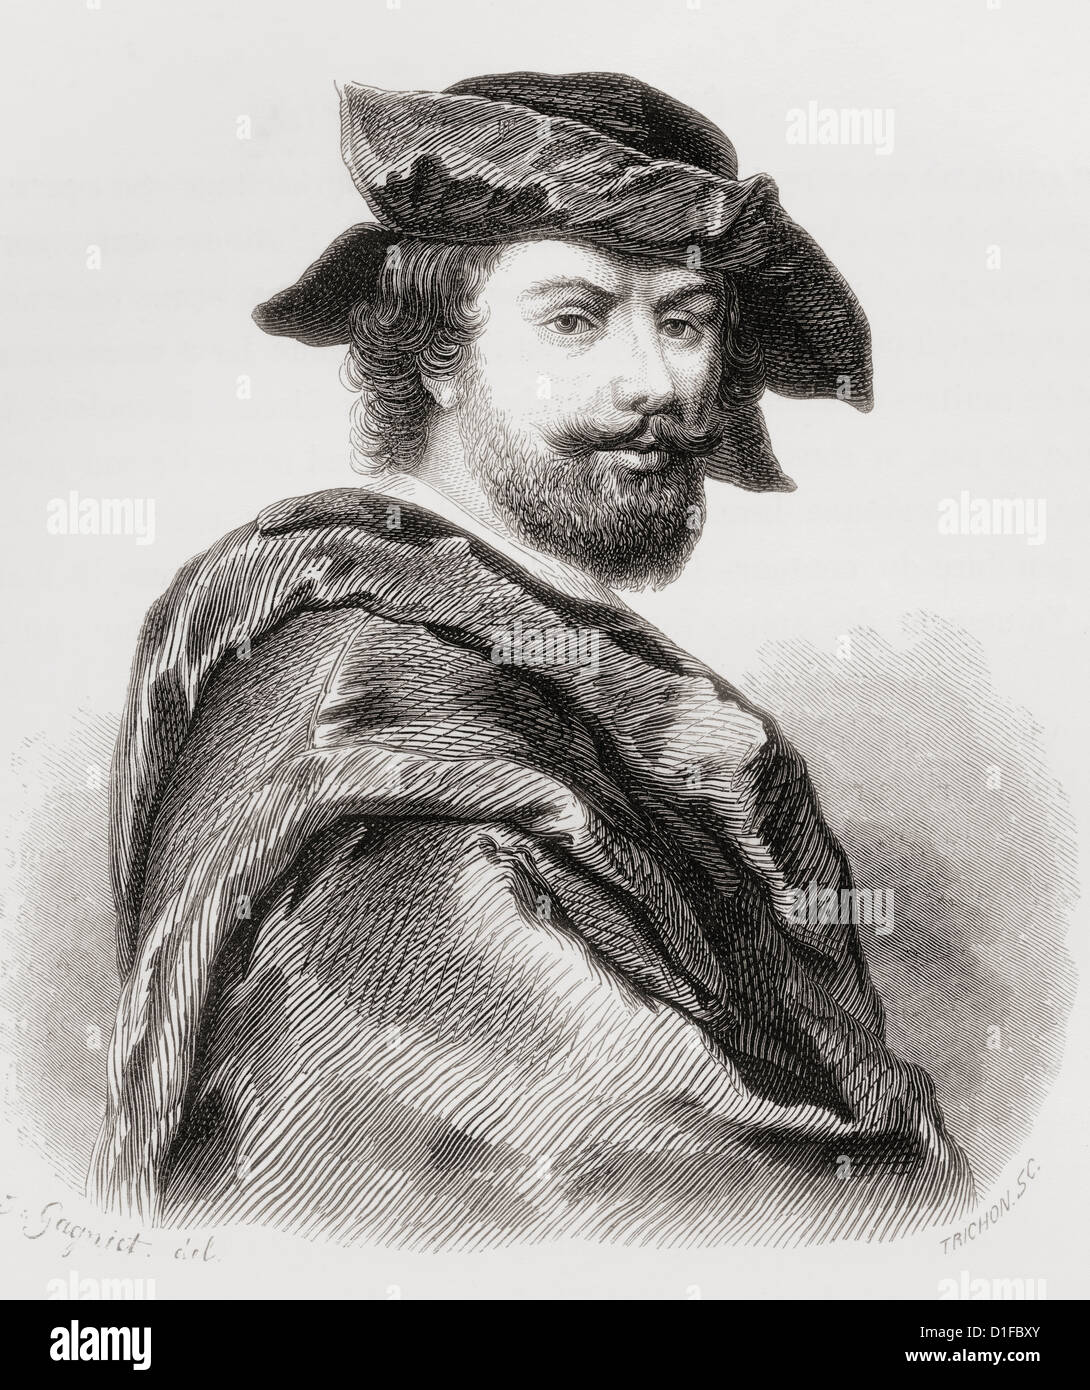 Cristofano Allori, 1577 – 1621. Italian artist. Stock Photo